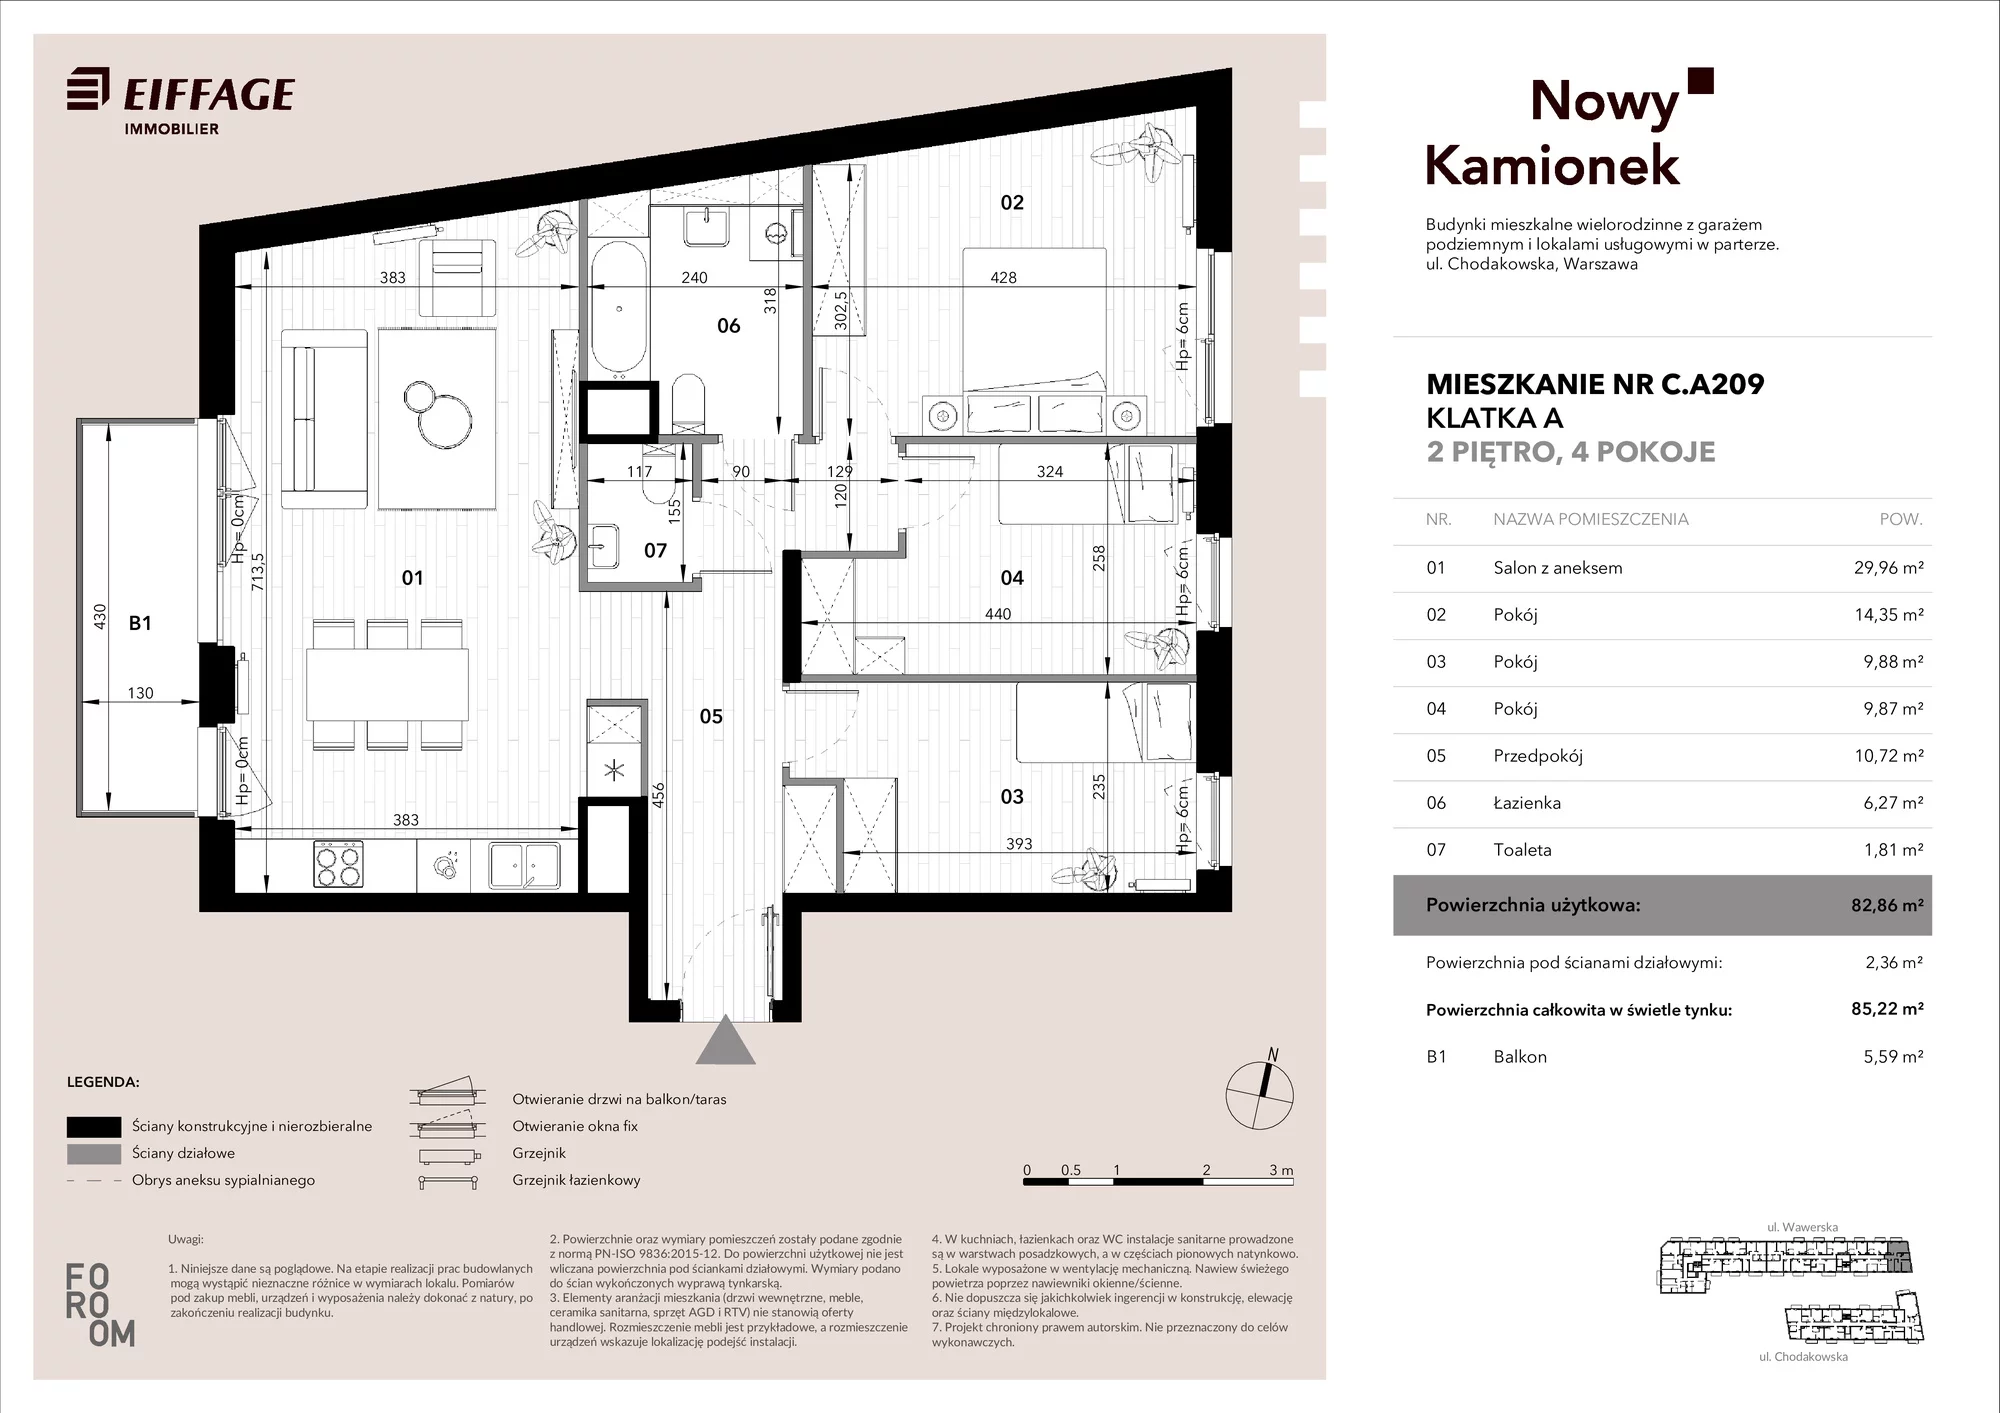 Mieszkanie 82,86 m², piętro 2, oferta nr C.A209, Nowy Kamionek, Warszawa, Praga Południe, Kamionek, ul. Chodakowska